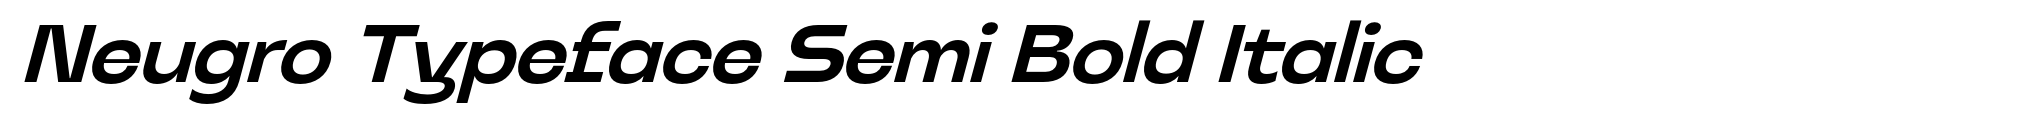 Neugro Typeface Semi Bold Italic image